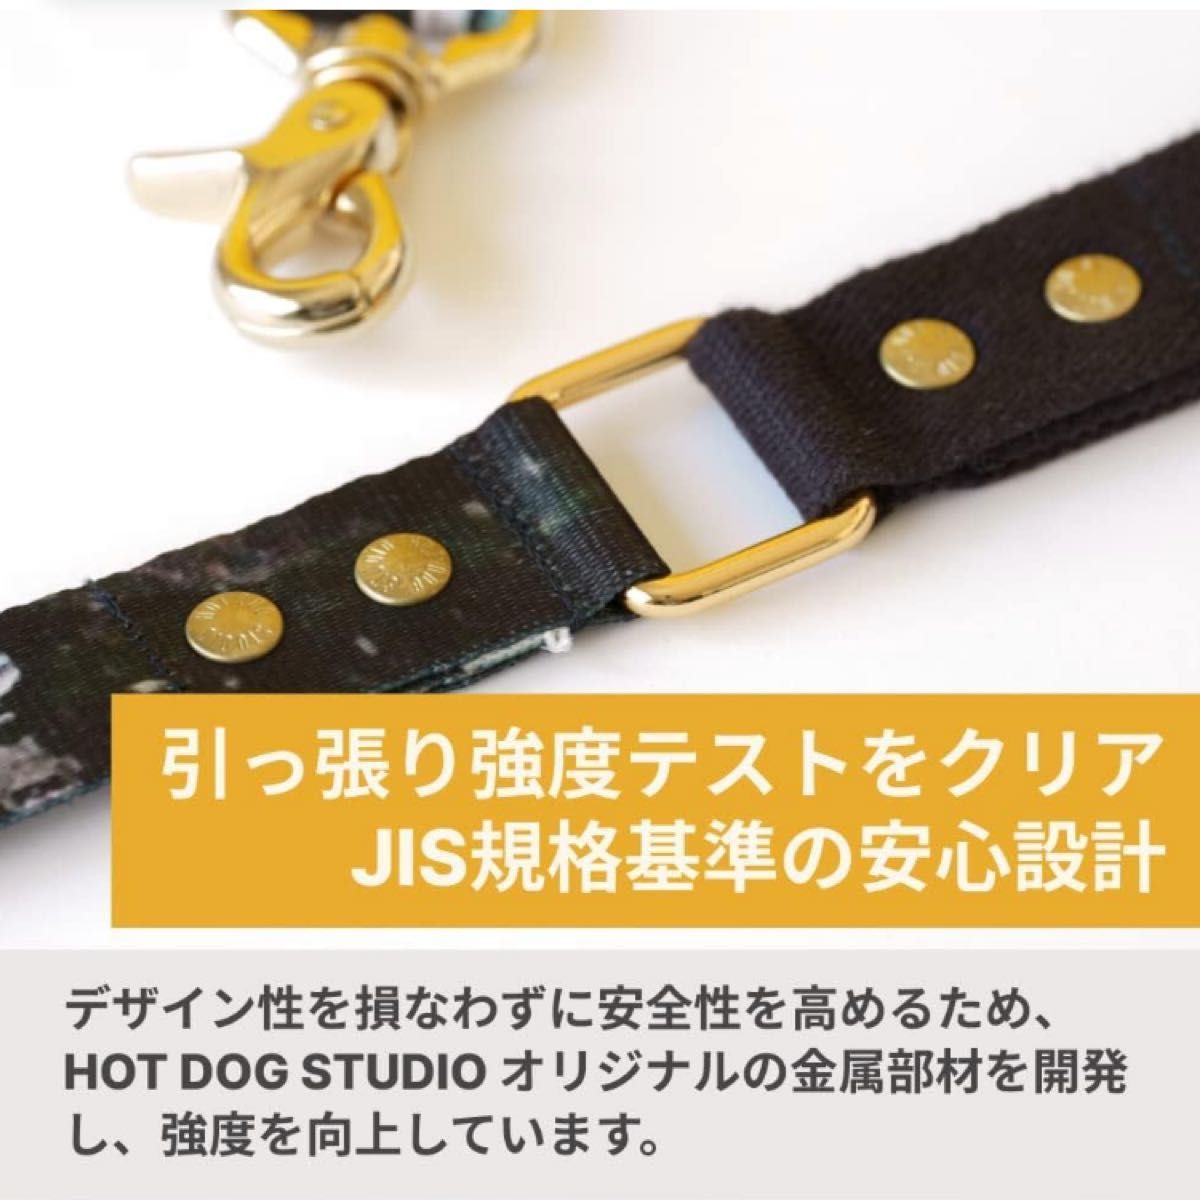 【セール】 HOT DOG STUDIO - LEASH 犬 犬用リード(MANHATTAN)